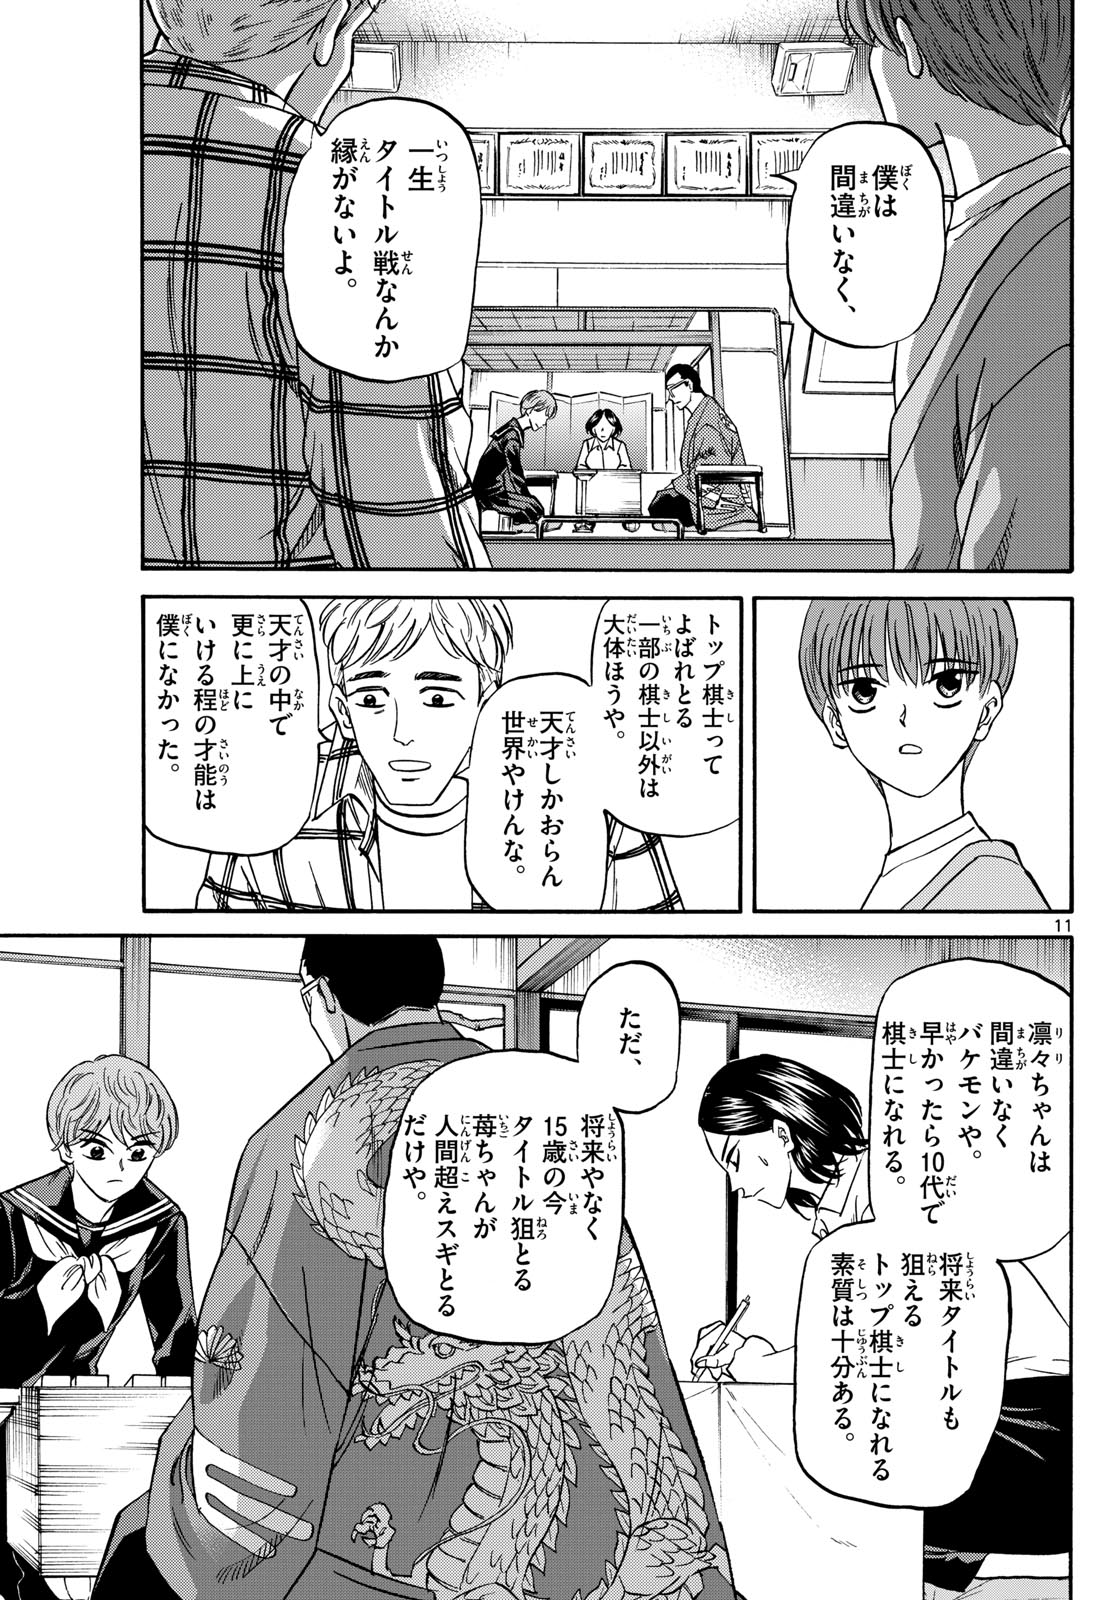 Tatsu to Ichigo - Chapter 169 - Page 11